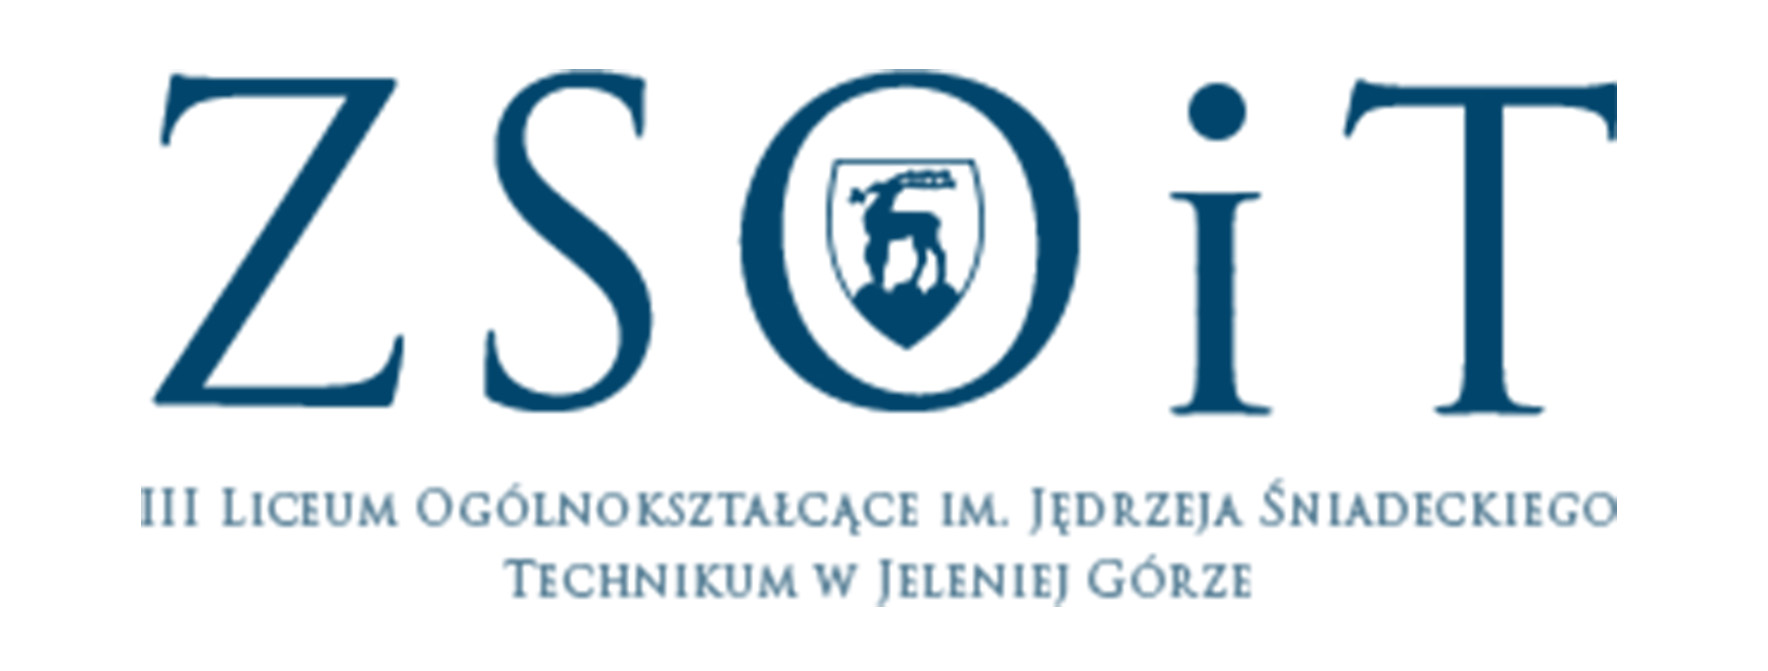 zsoit logo